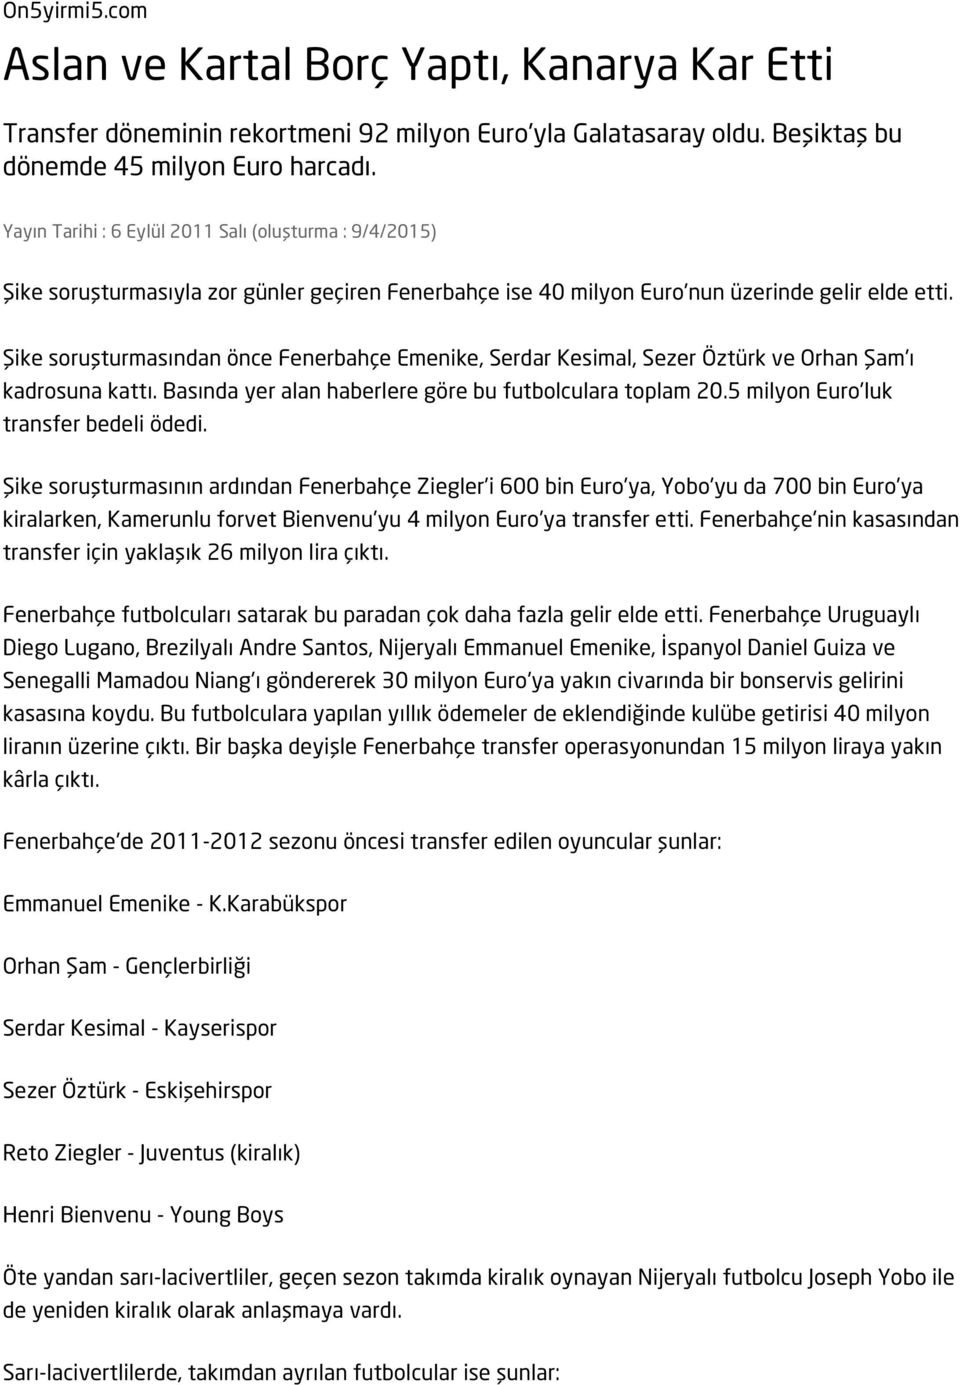 Şike soruşturmasından önce Fenerbahçe Emenike, Serdar Kesimal, Sezer Öztürk ve Orhan Şam'ı kadrosuna kattı. Basında yer alan haberlere göre bu futbolculara toplam 20.